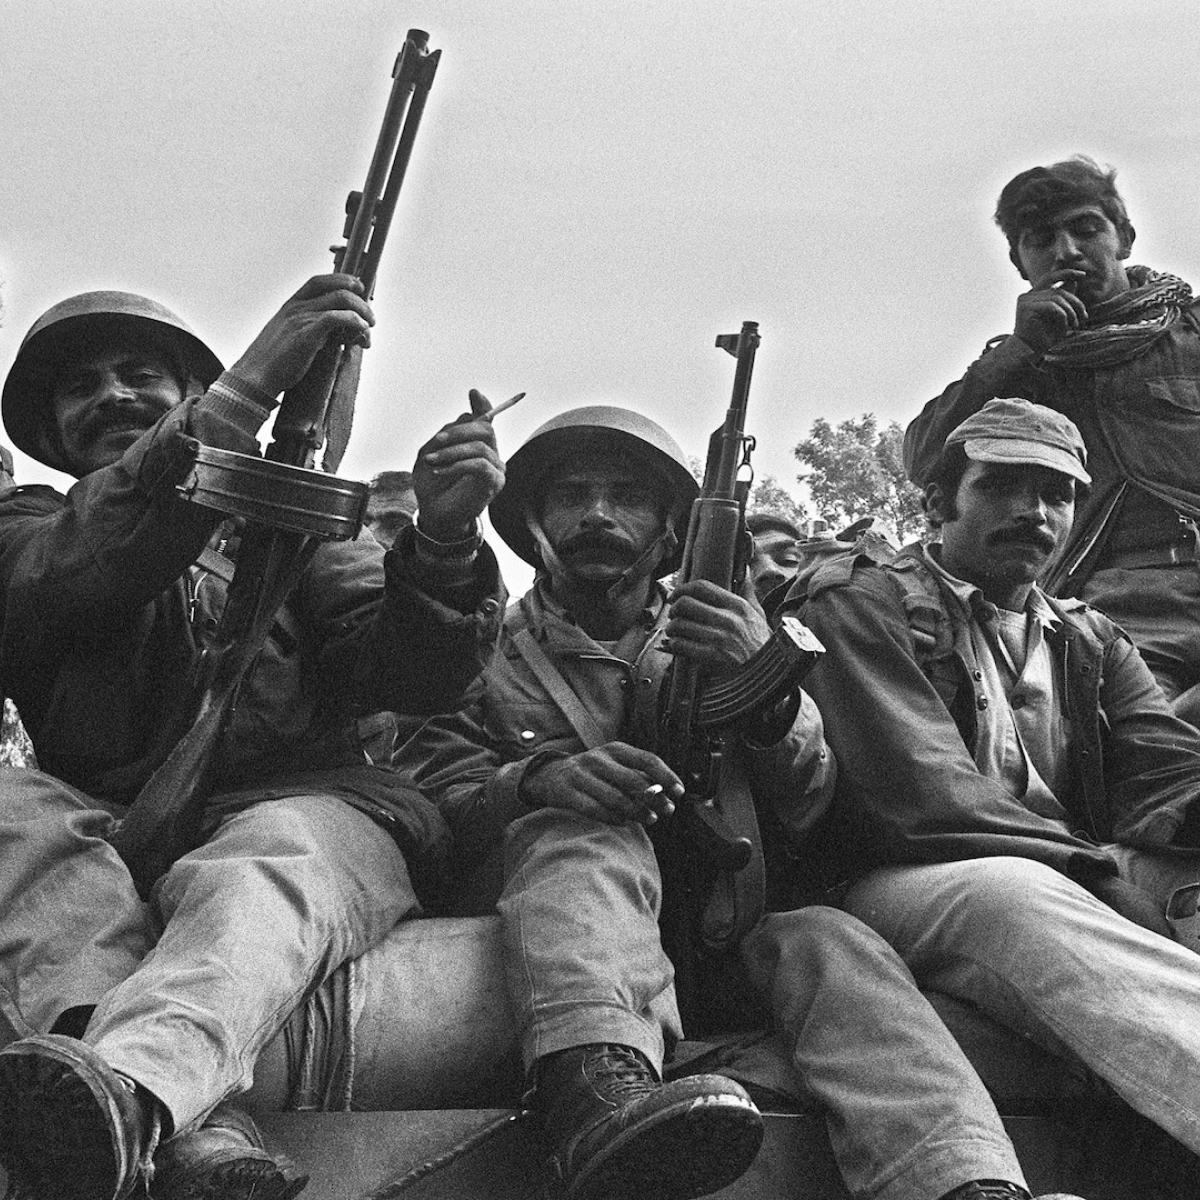 جنود سوريون في بيروت في 15/ 11/ 1976 (فرانس برس)